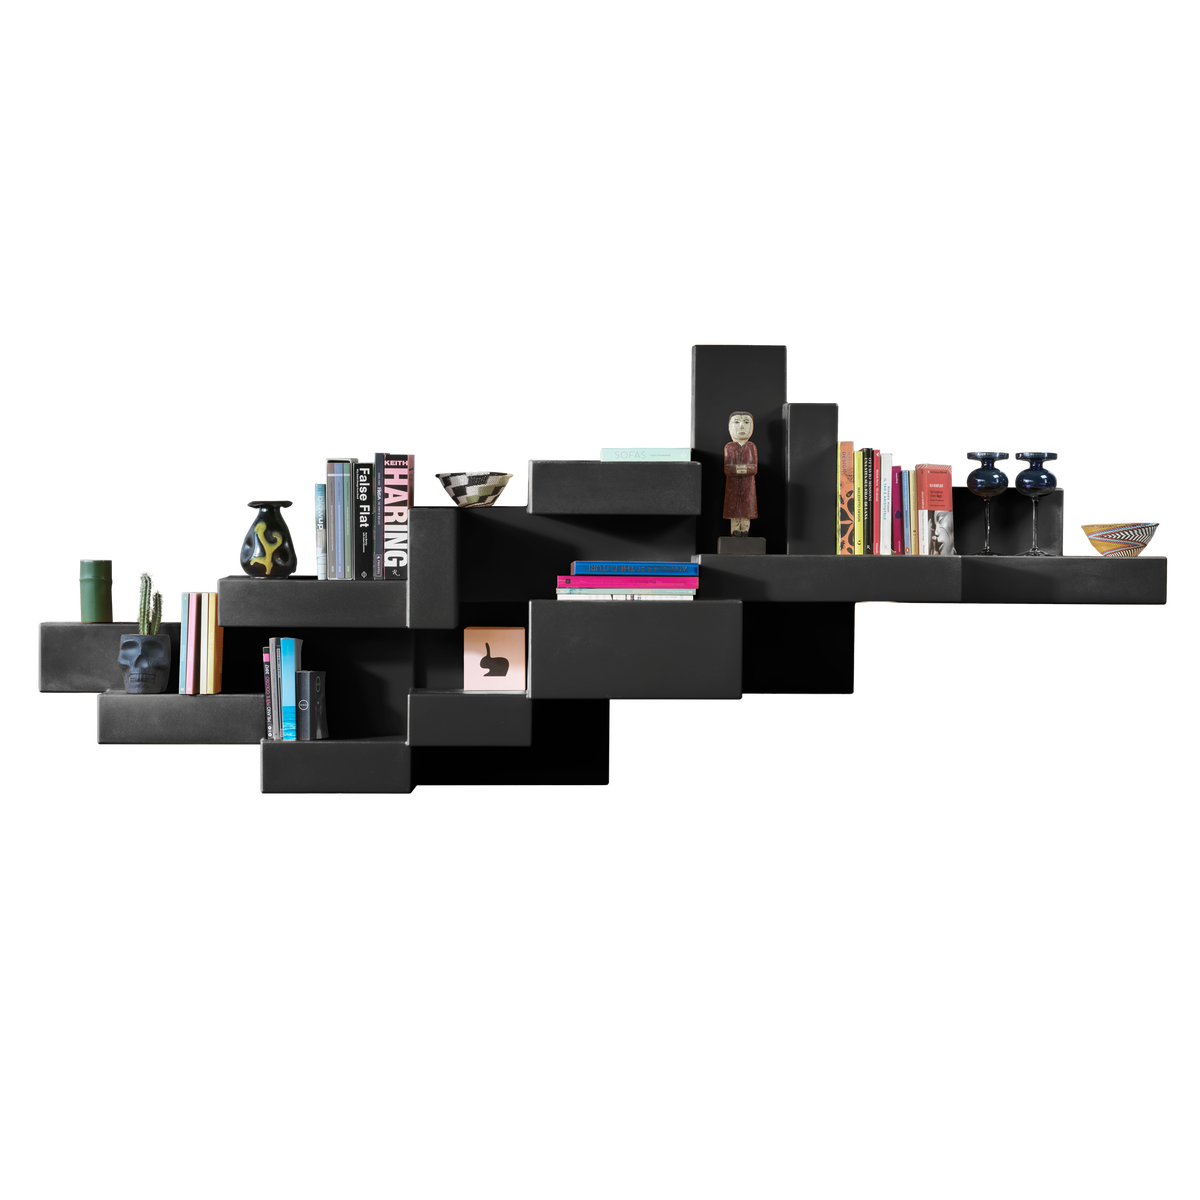 PRIMITIVE bookshelf black, QeeBoo, Eye on Design